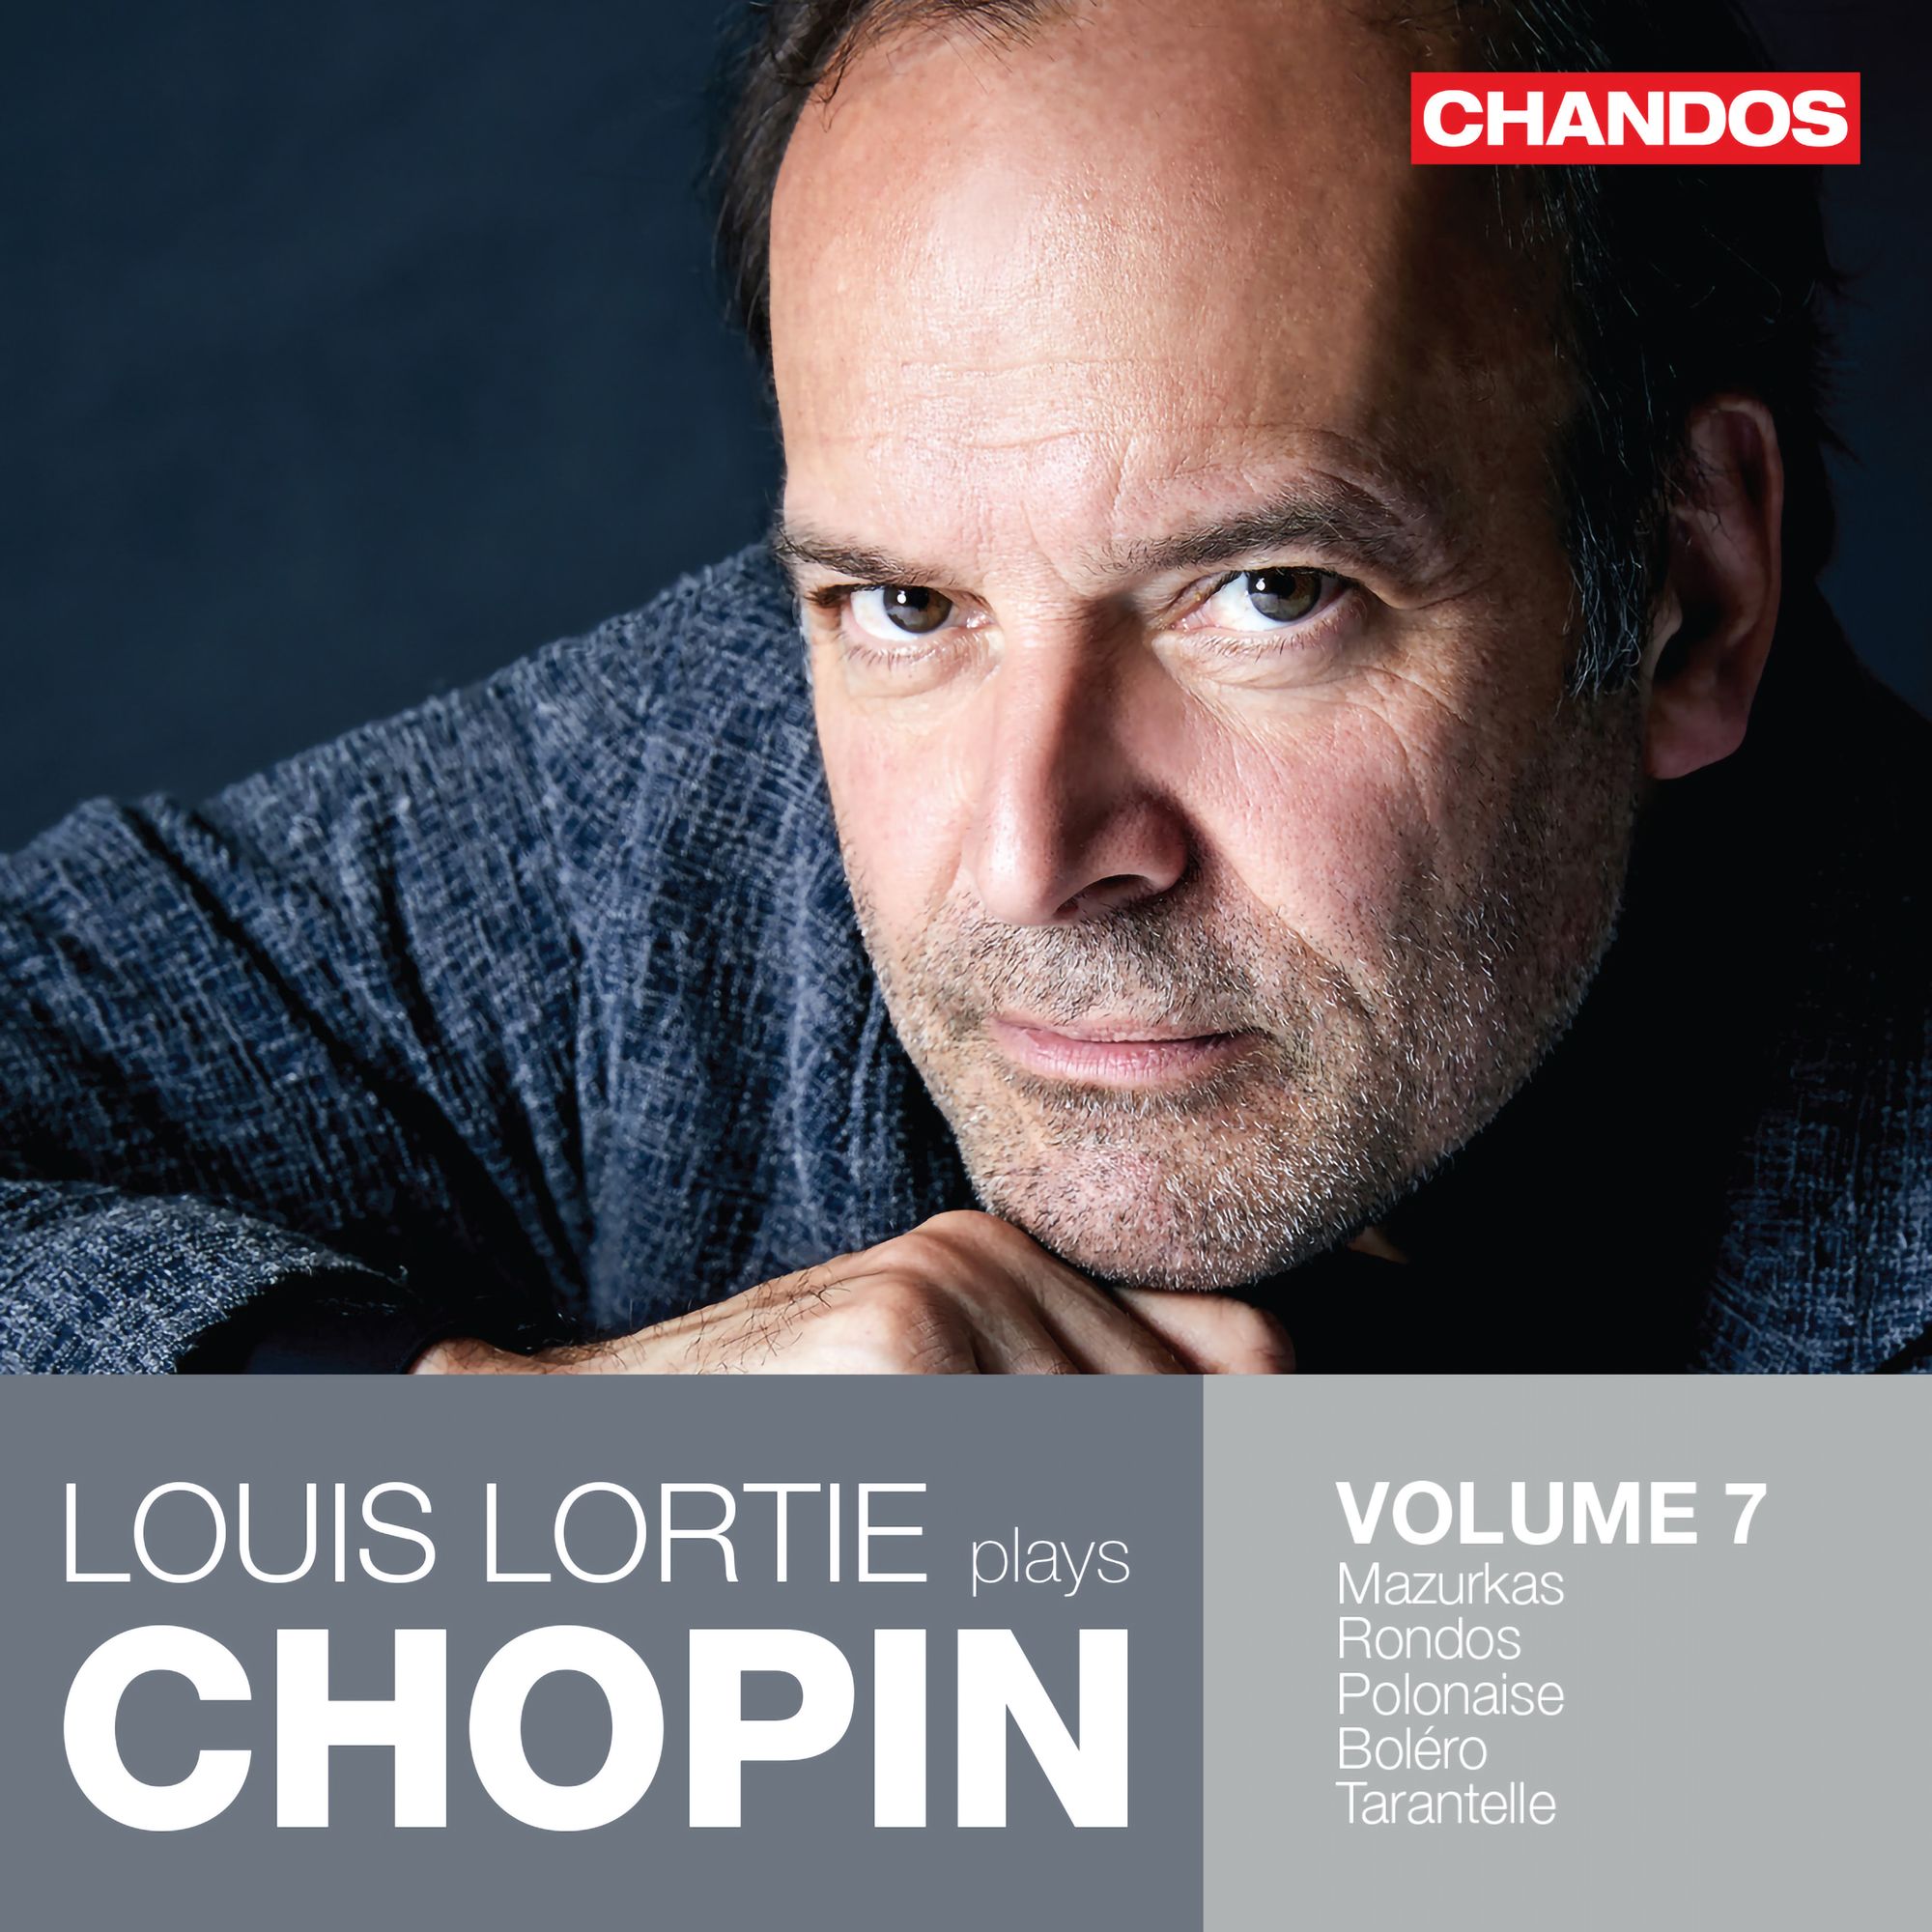 Louis Lortie's Chopin on Chandos: Volume 7